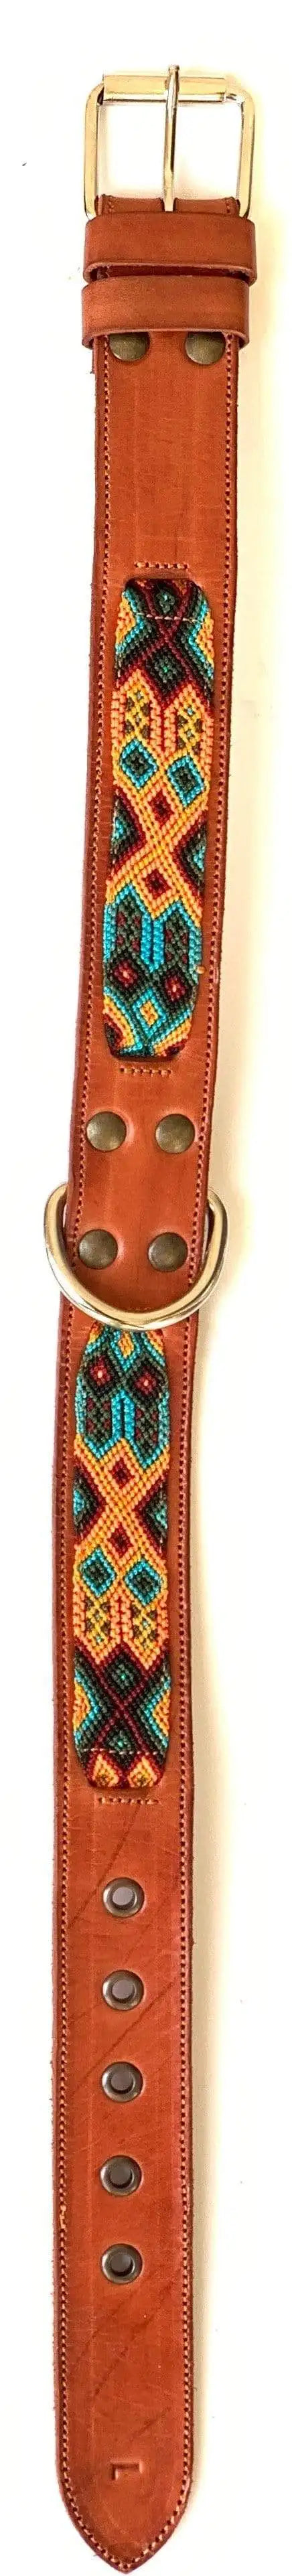 Double Detail Artisanal Handmade Dog Collars - 40